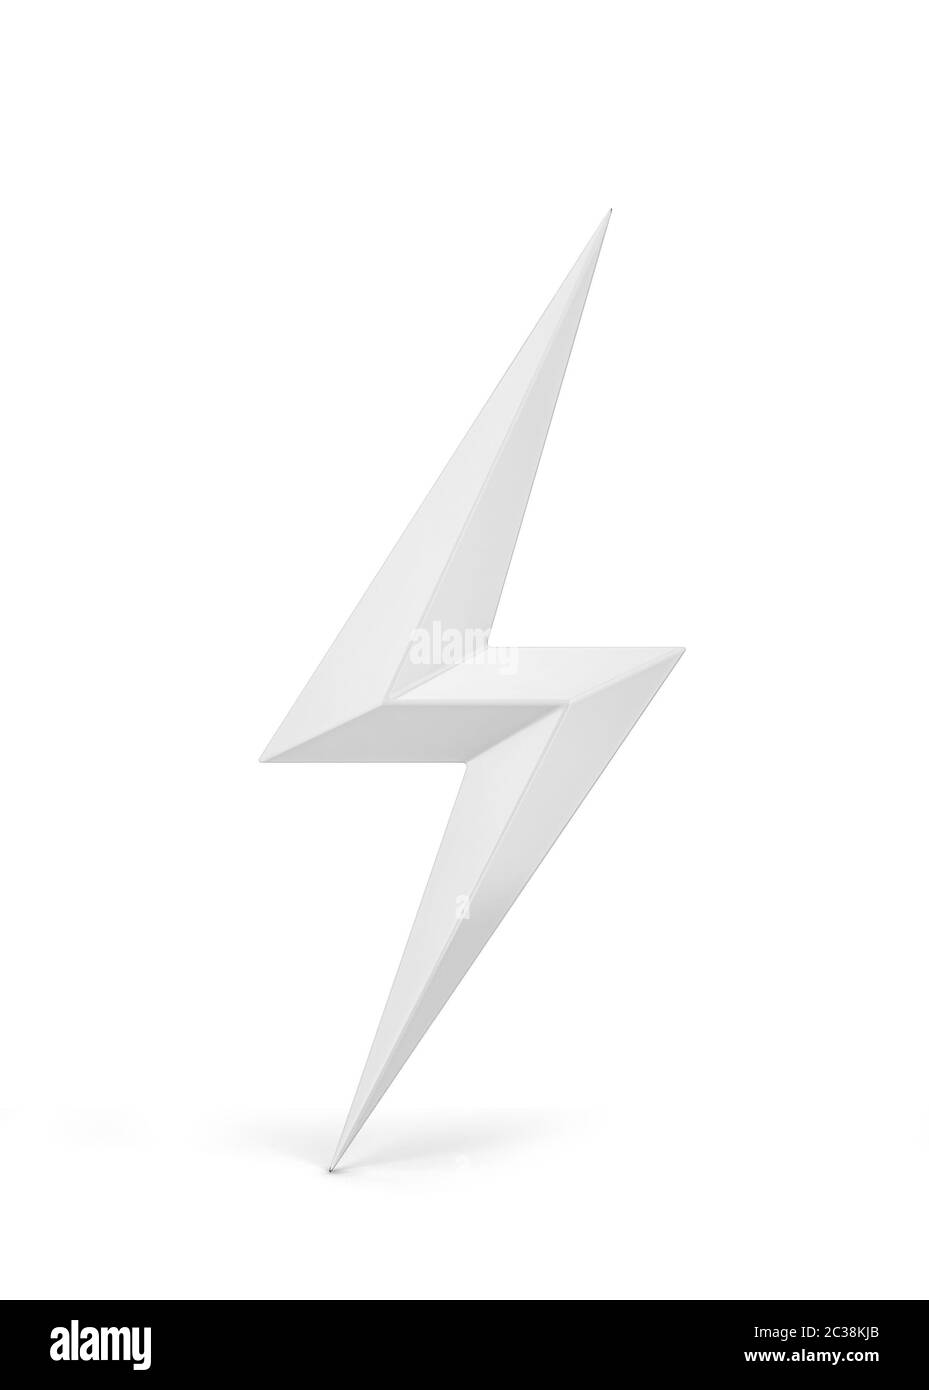 Lightning bolt symbol. 3d illustration isolated on white background Stock Photo